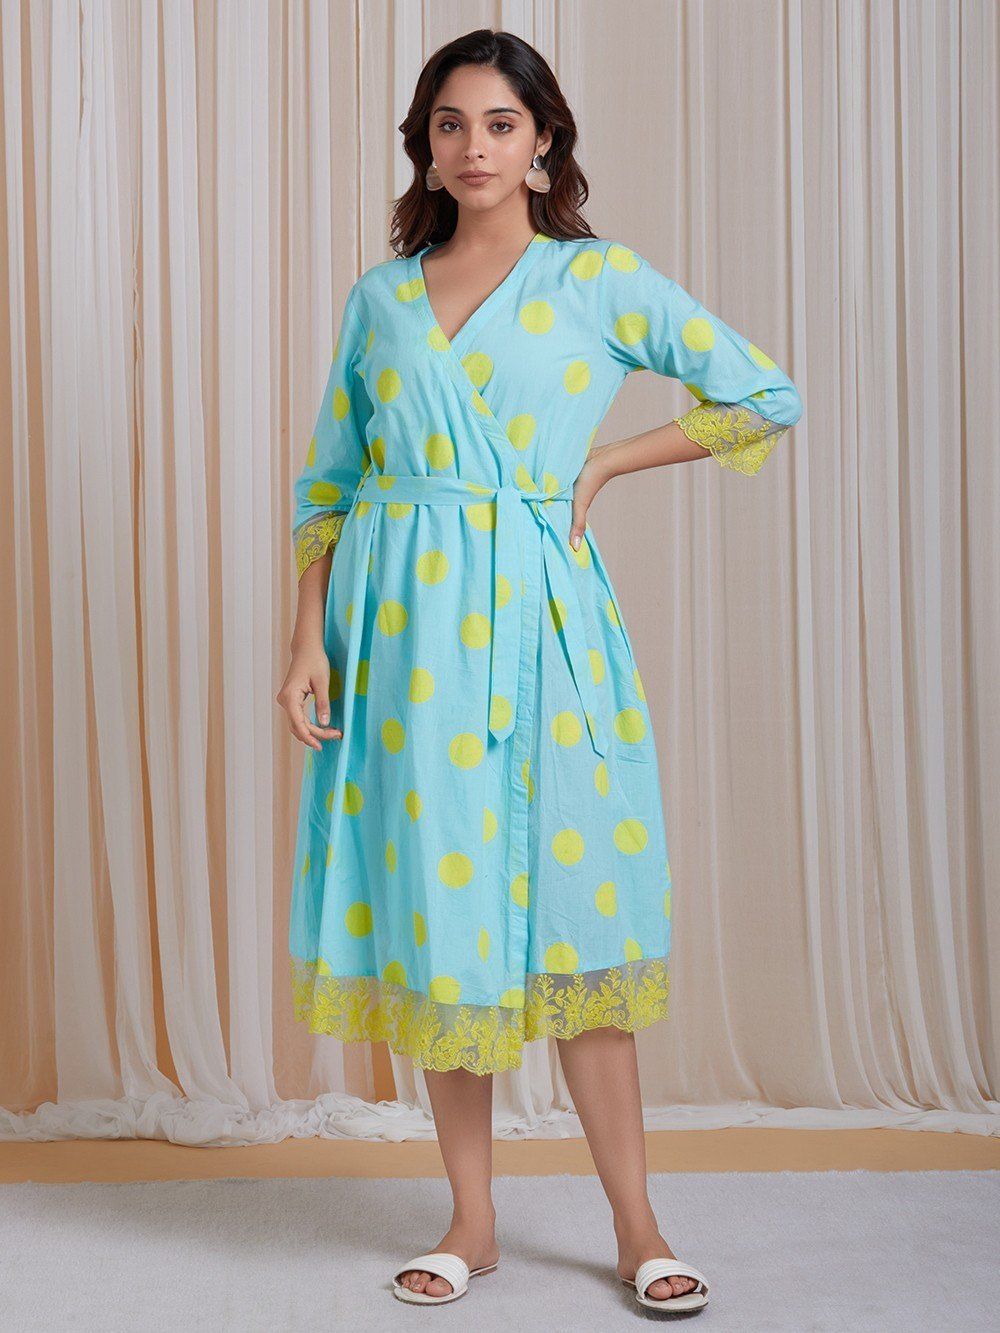 Cotton Kimono Robe Block Print Robes For Women Dressing